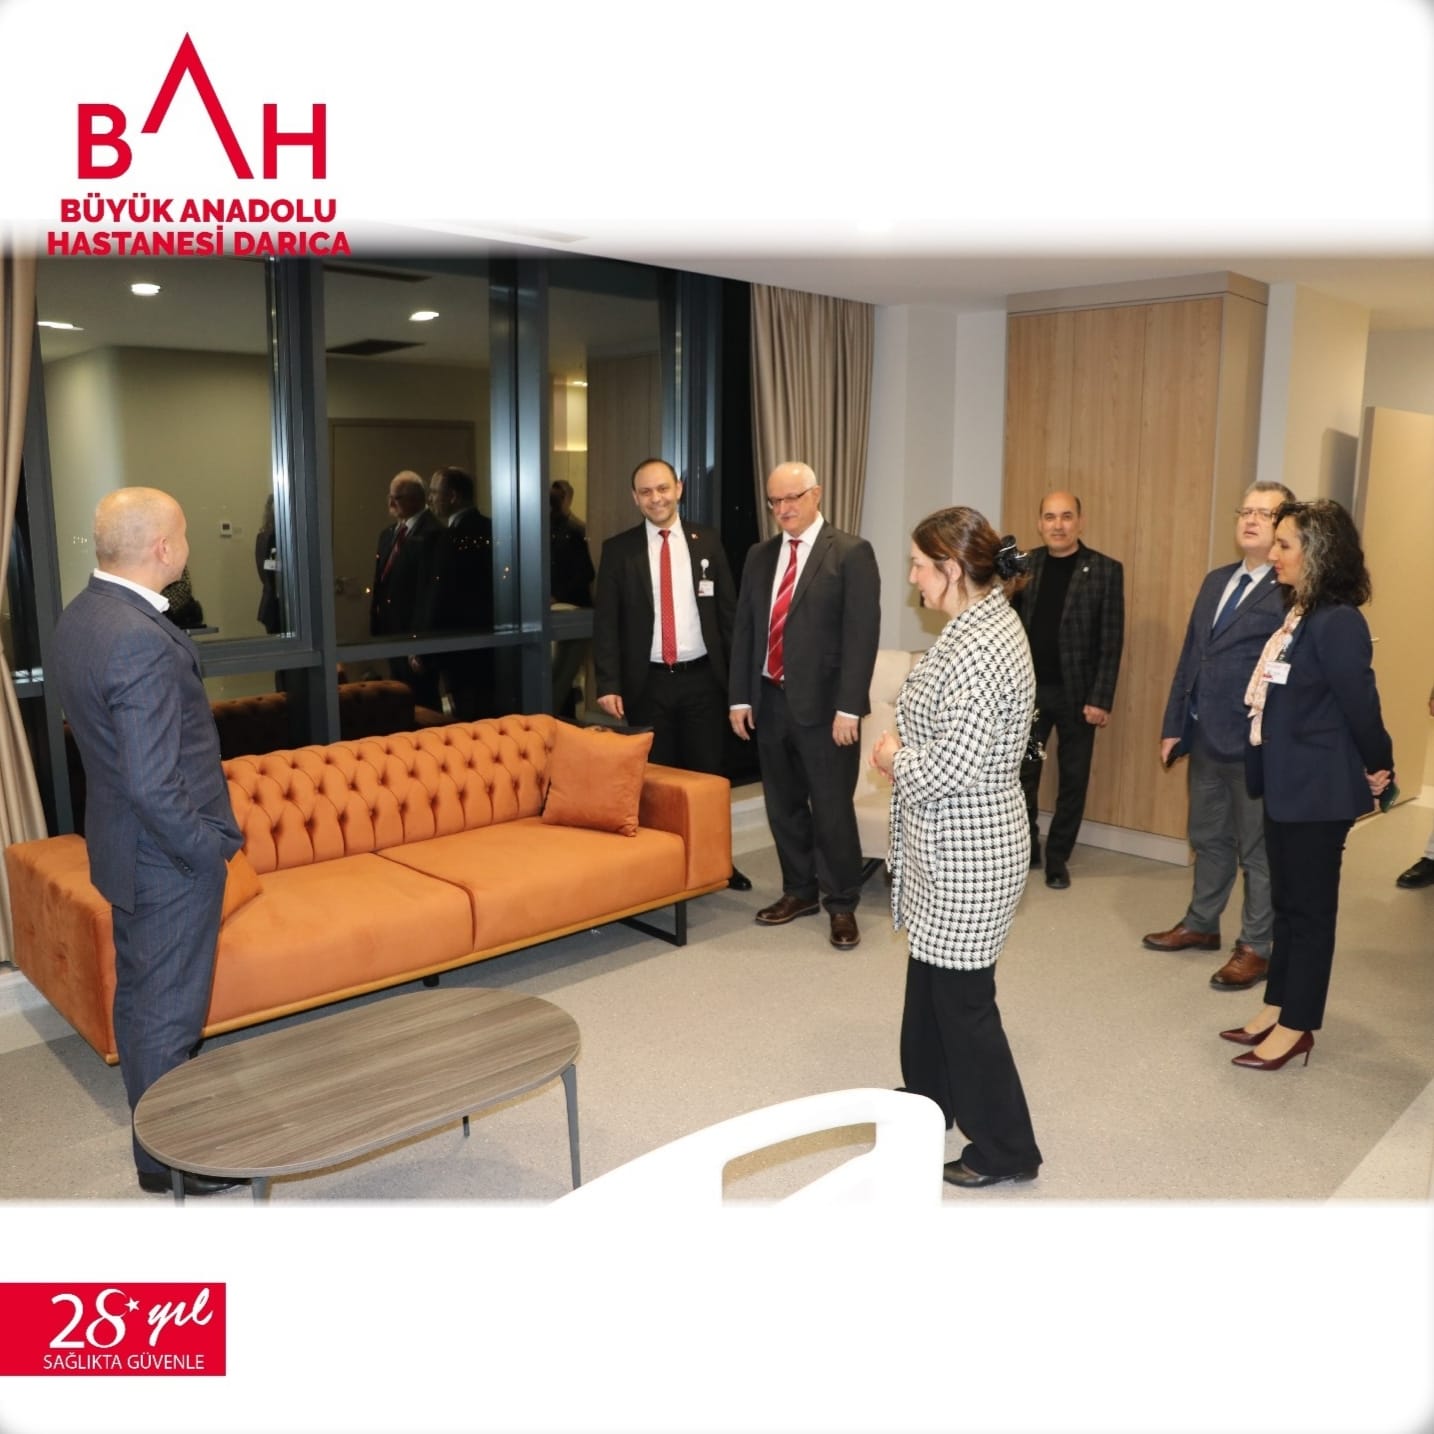 Büyük Anadolu Sağlık (BAH ) Grubu Darıca’ da ki yeni hastanesinde Gebze Ticaret Odası Üyelerini ağırladı.